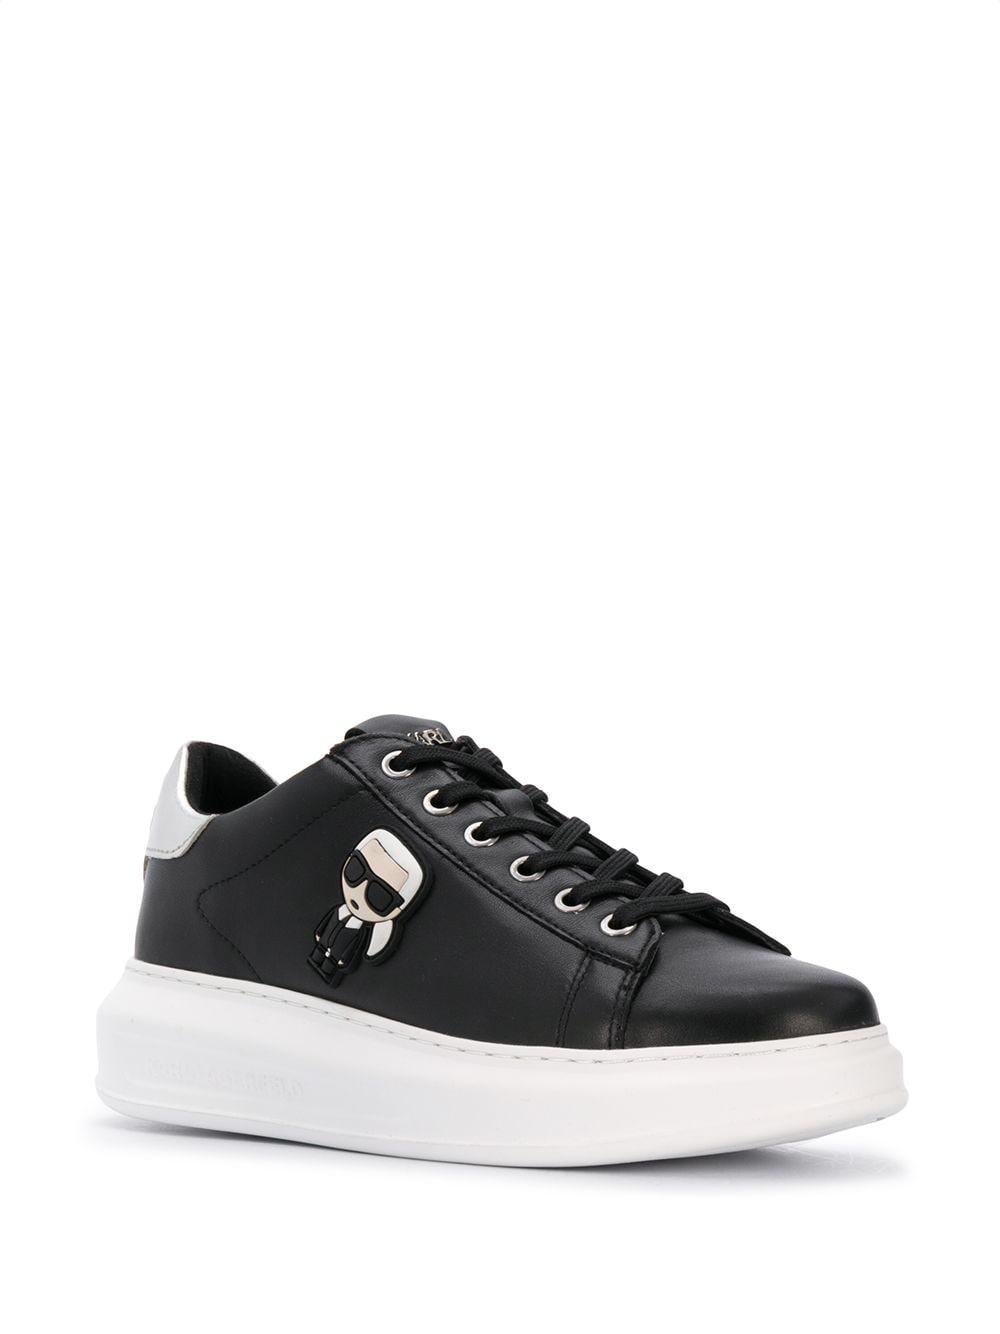 Karl Lagerfeld Kapri Ikonik Leather Sneakers in Black - Lyst